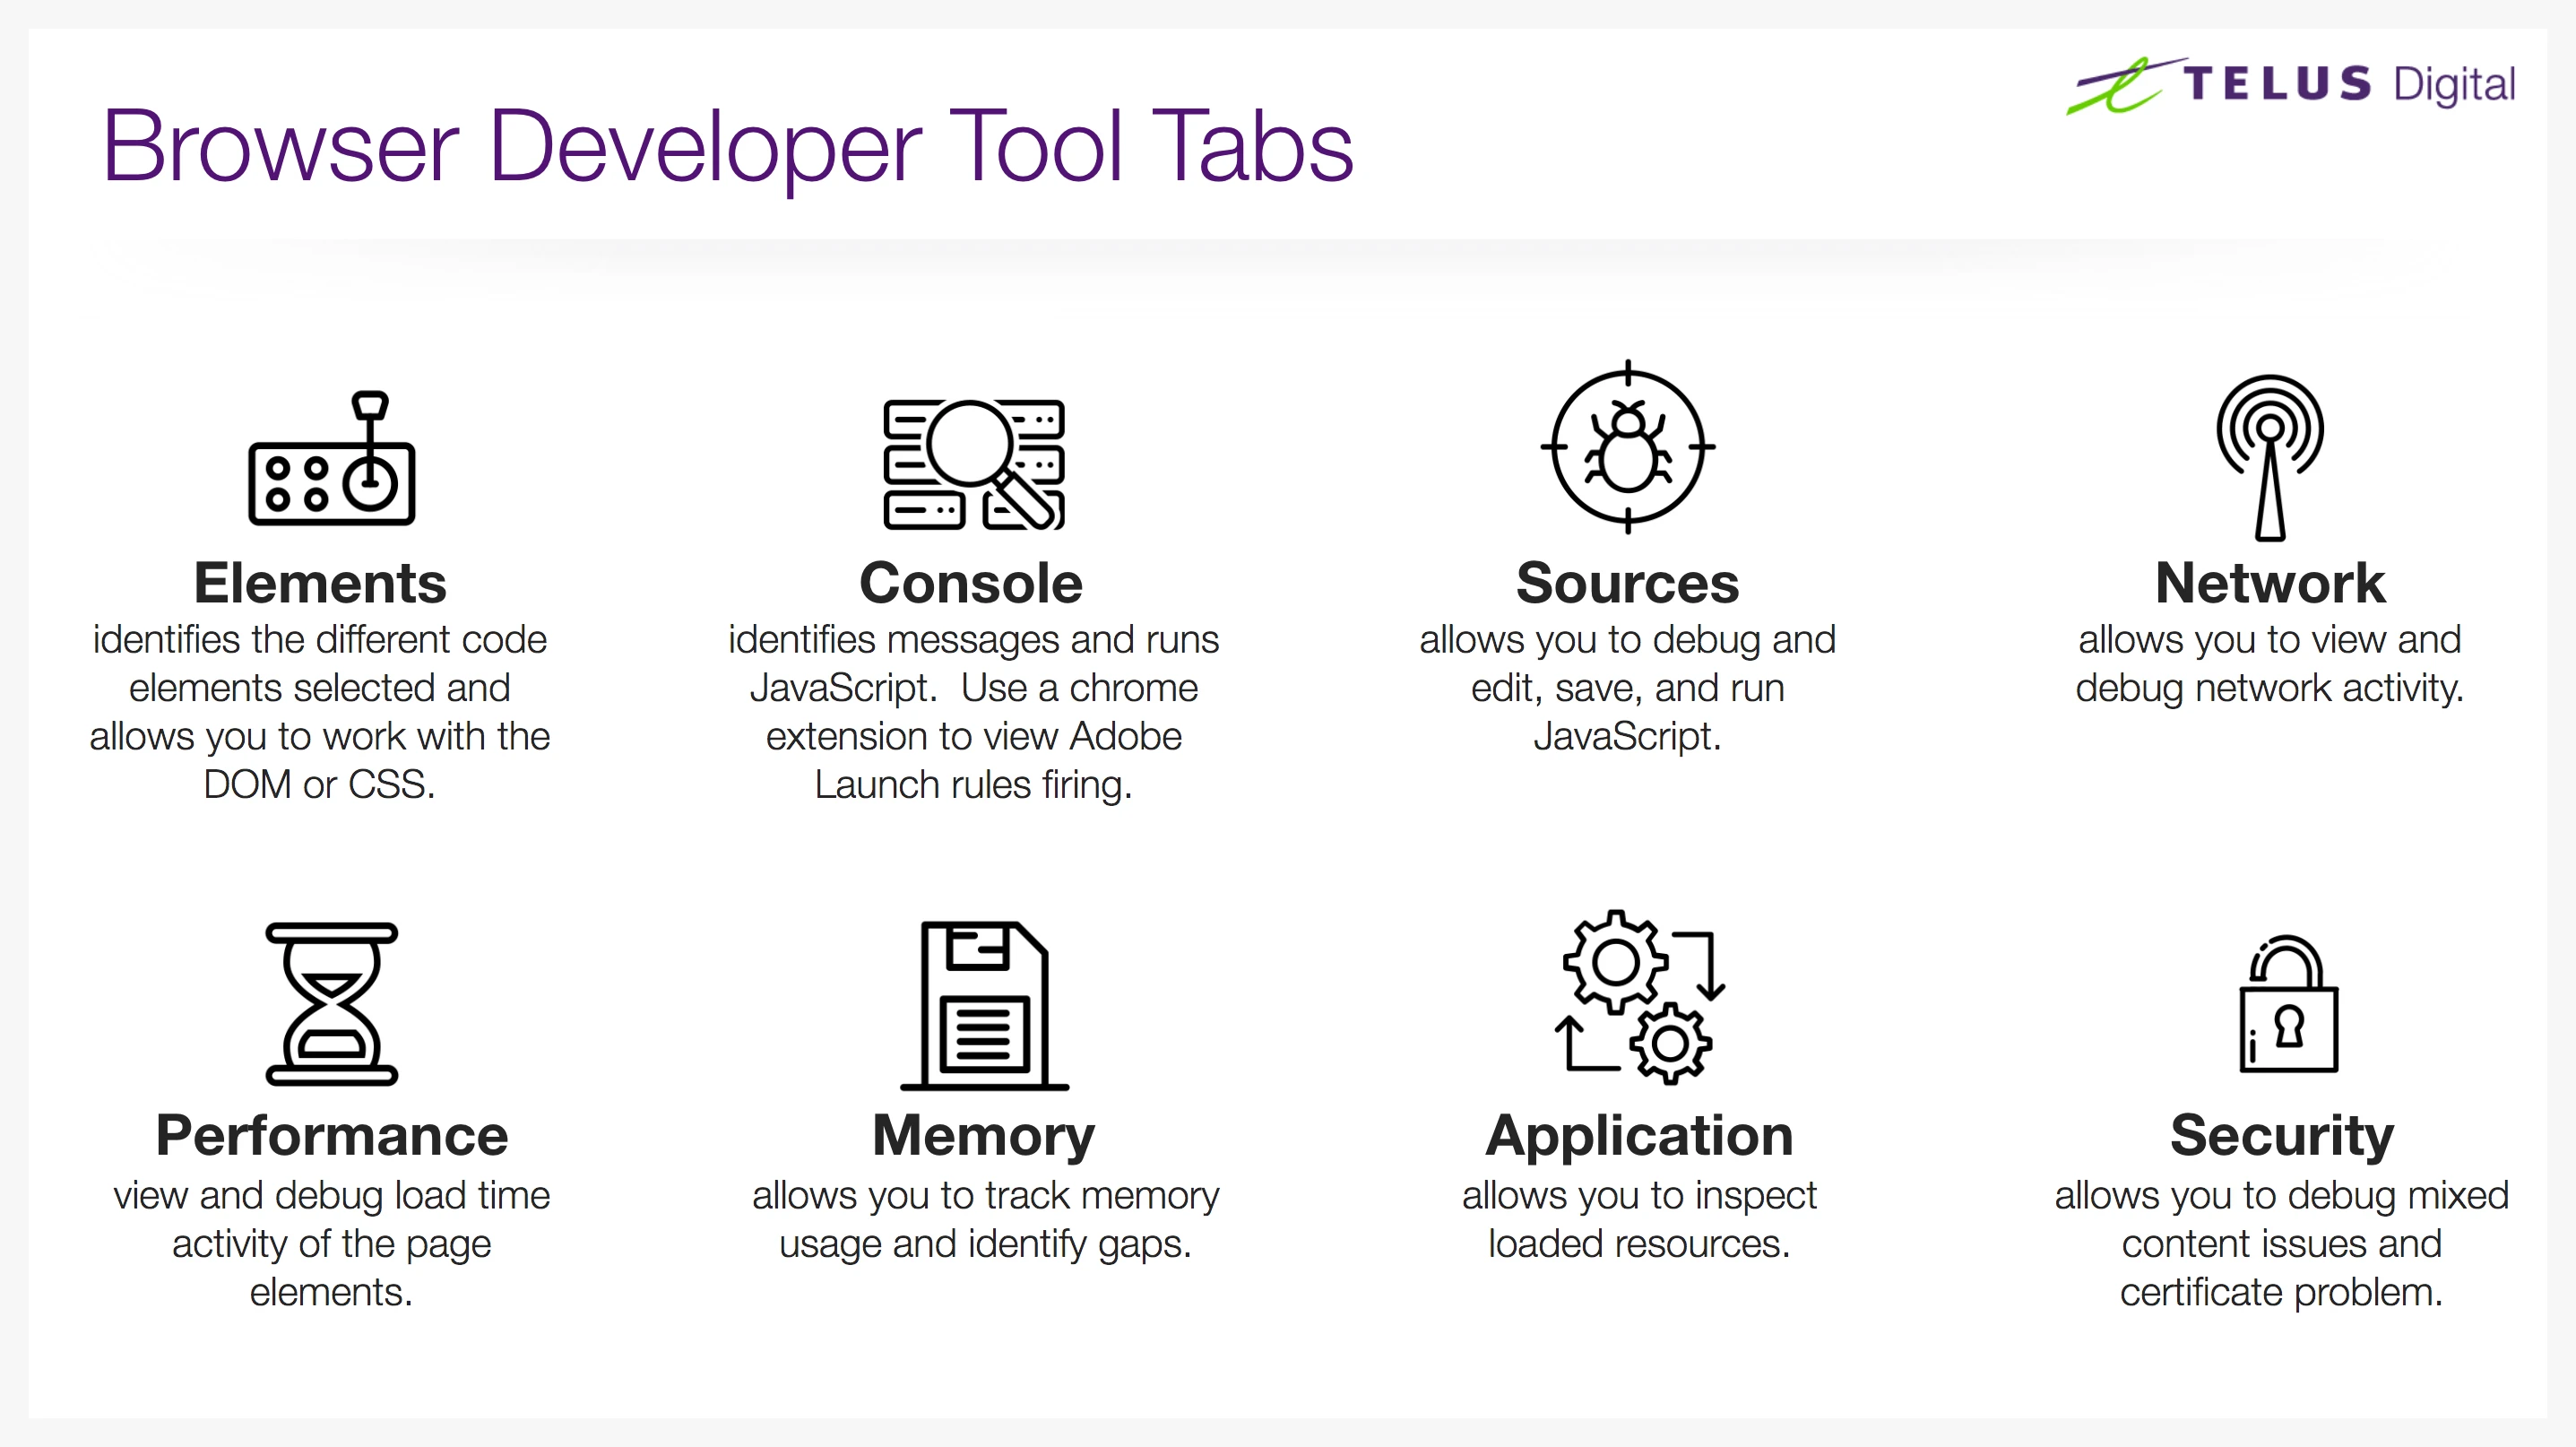 Browser developer tool tabs